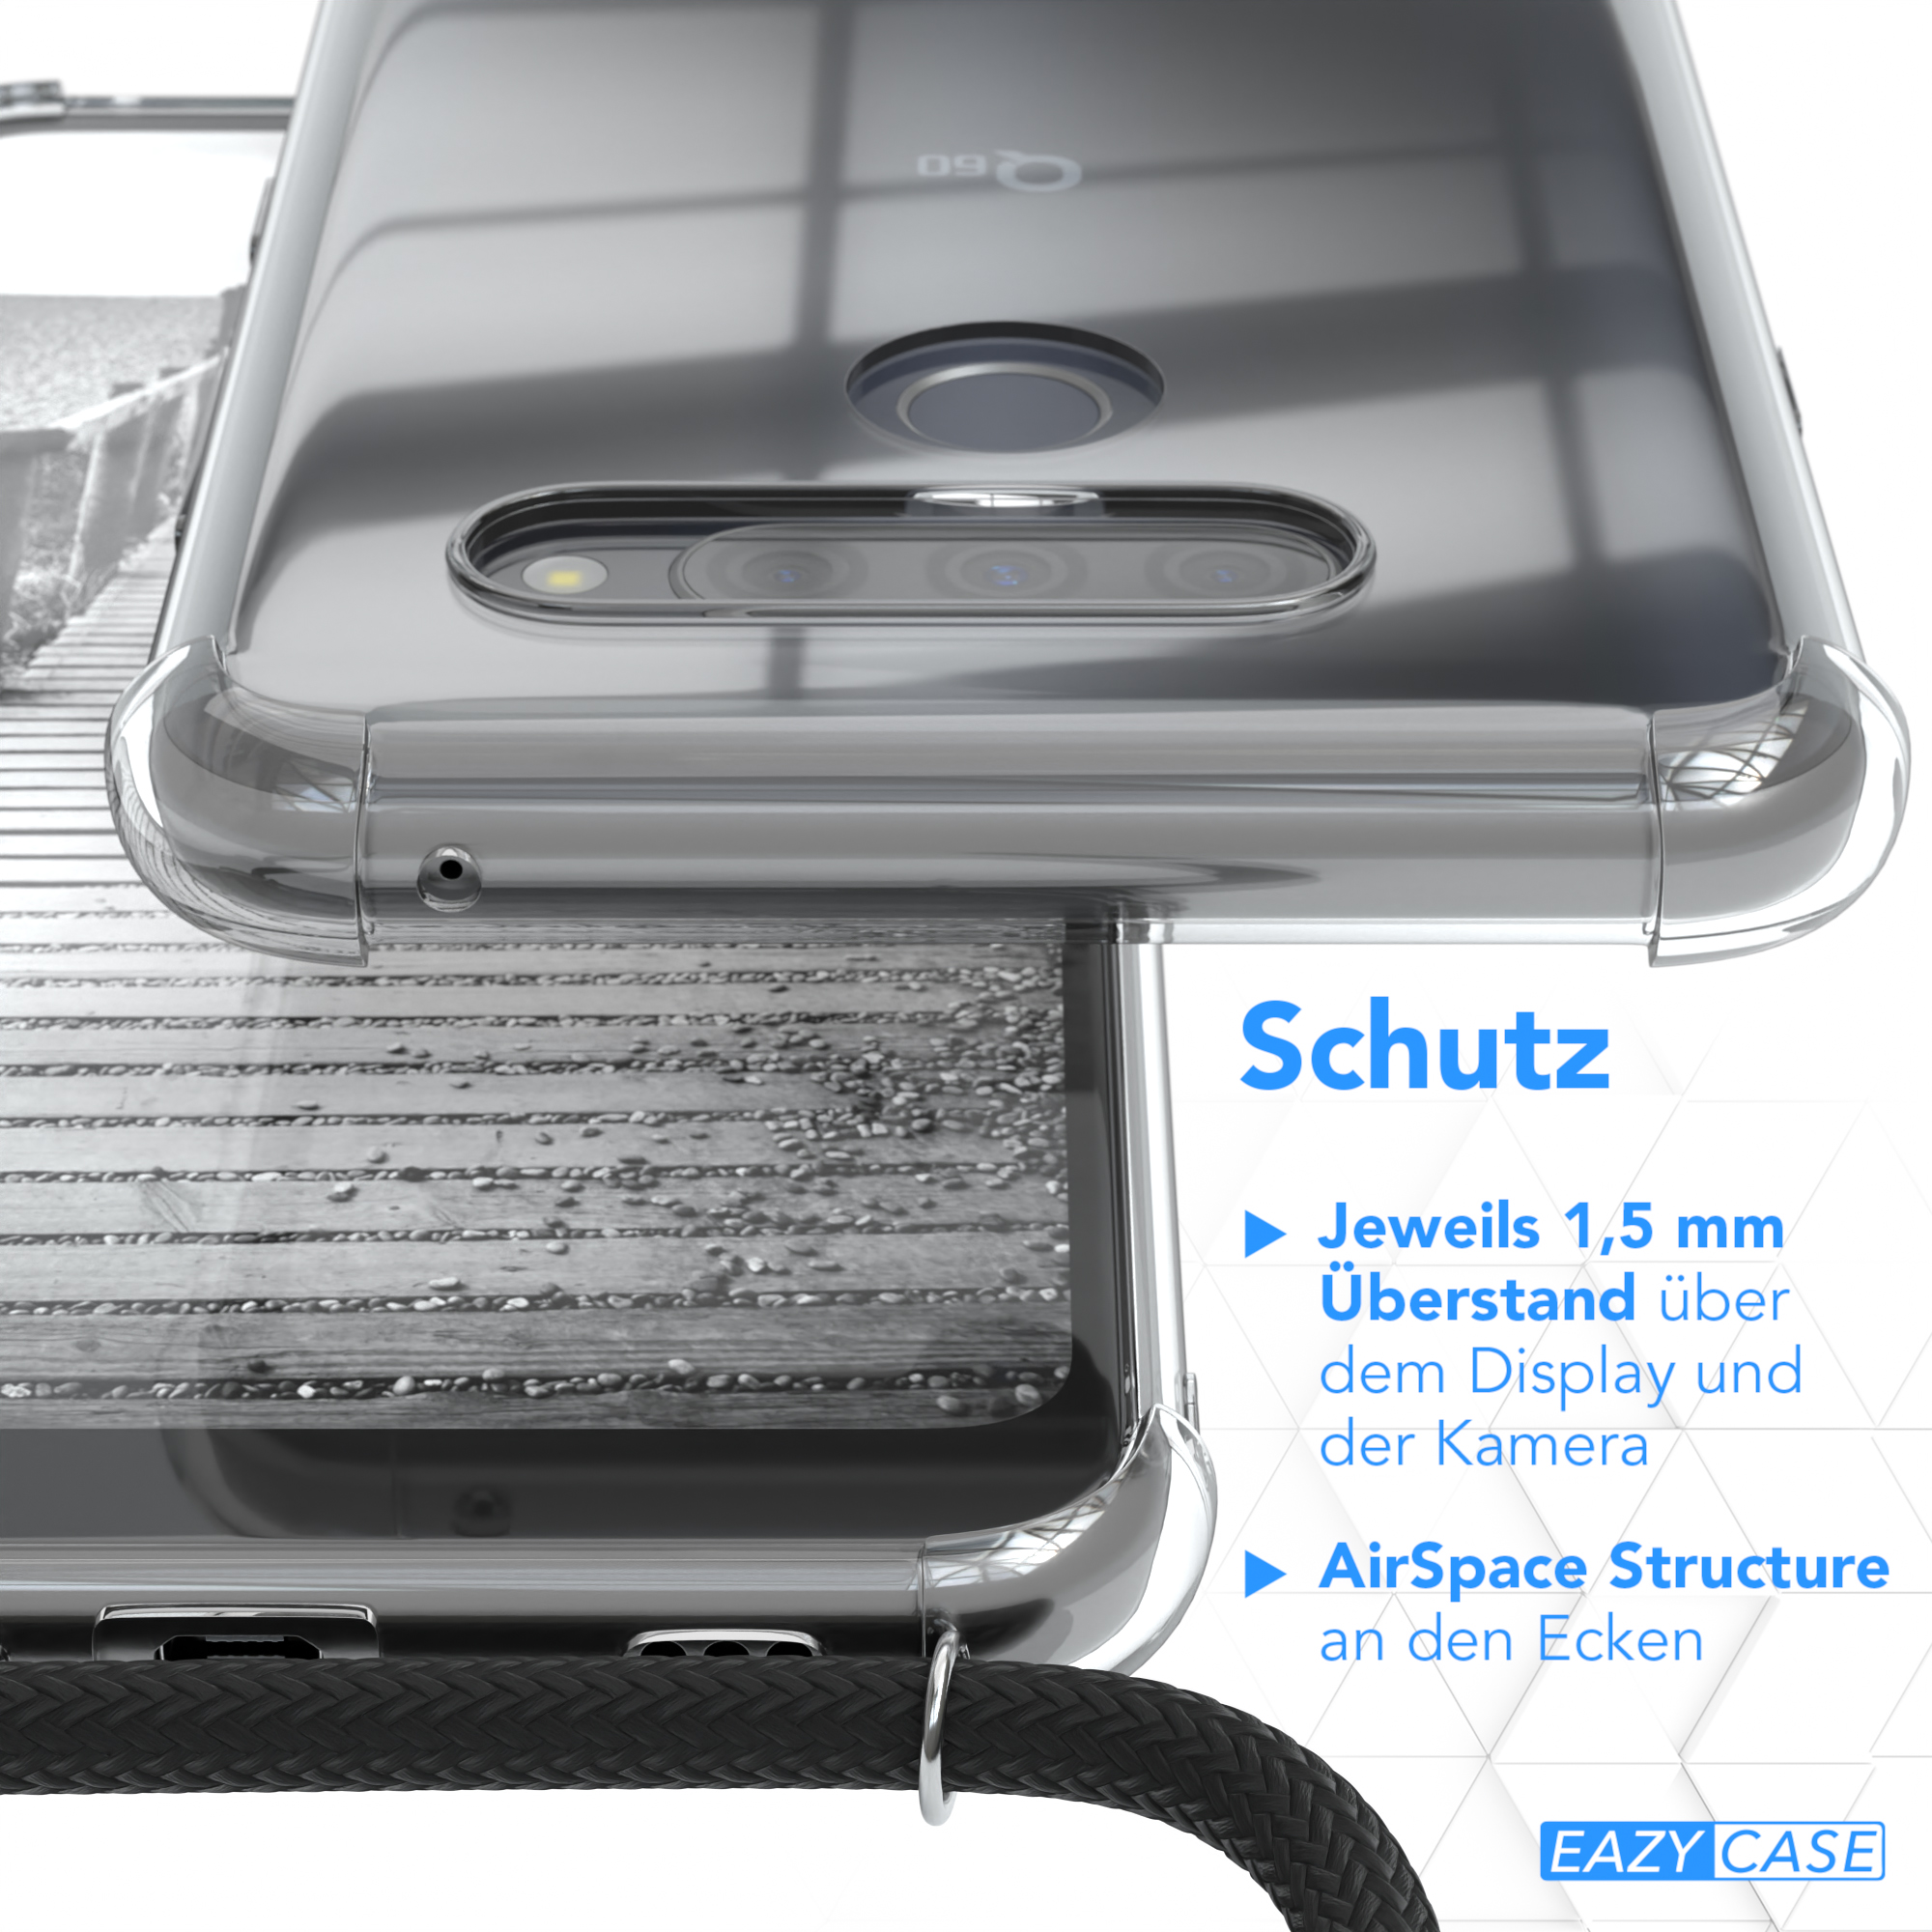 EAZY CASE + Metall Kordel Umhängetasche, Grau K50, Anthrazit extra / Q60 LG, Schwarz, Handykette